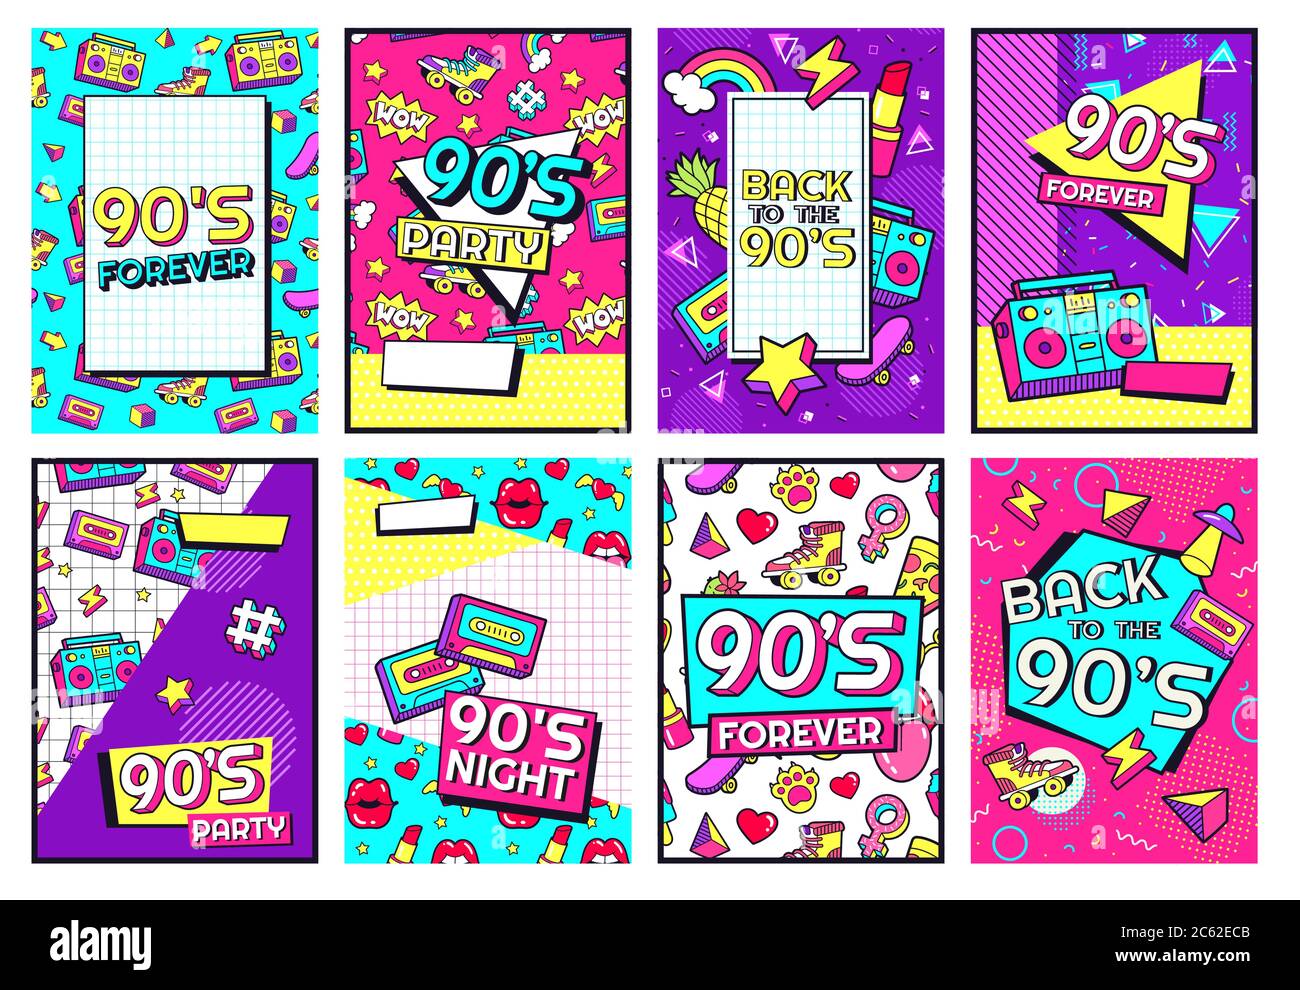 Affiche rétro des années 90. Années 90 Forever, Funky années 90 musique nuit affiches et pop flyer carte vecteur ensemble Illustration de Vecteur